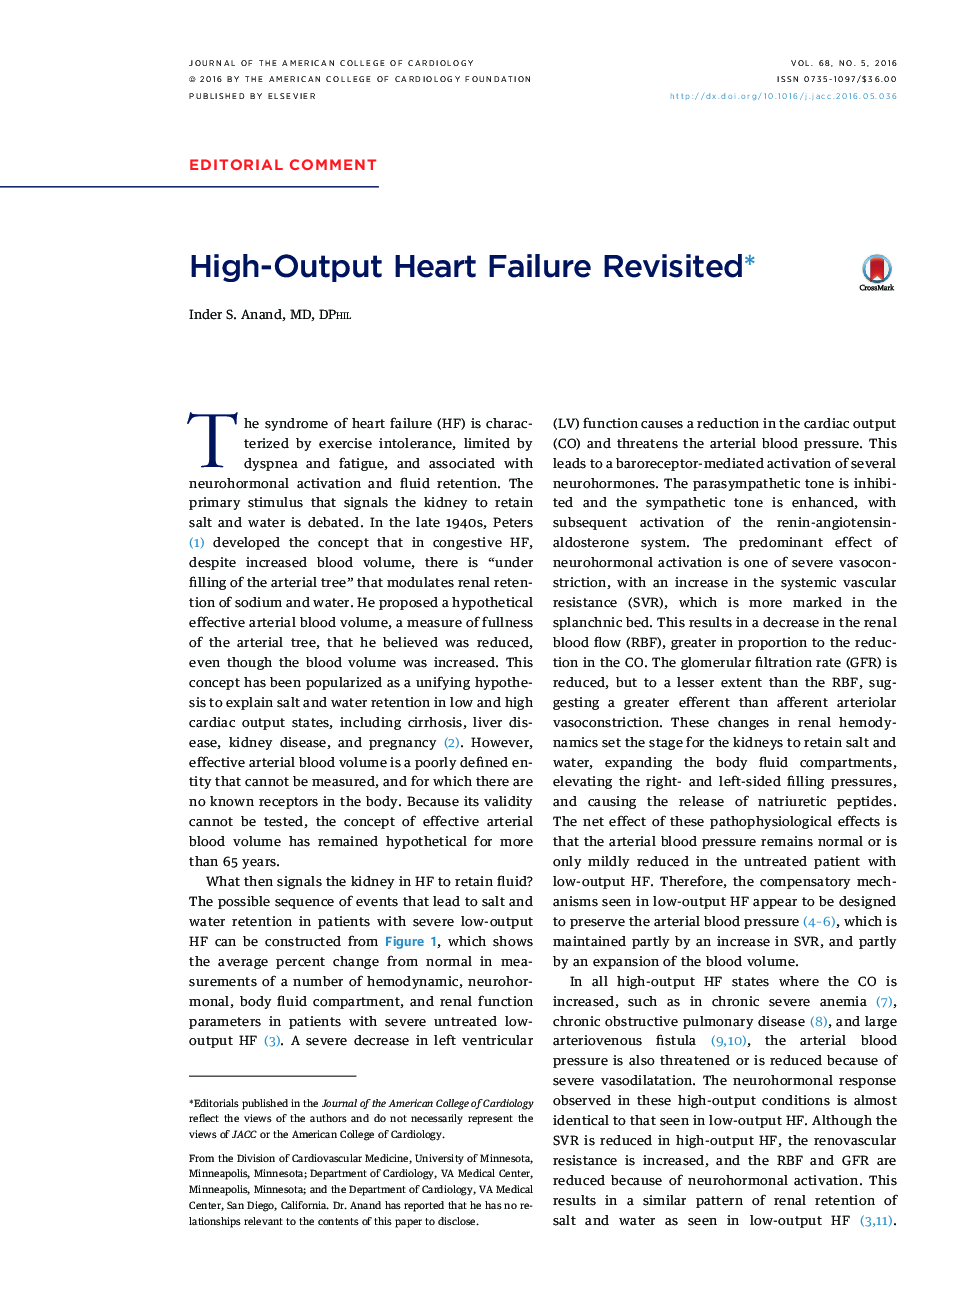 High-Output Heart Failure Revisitedâ